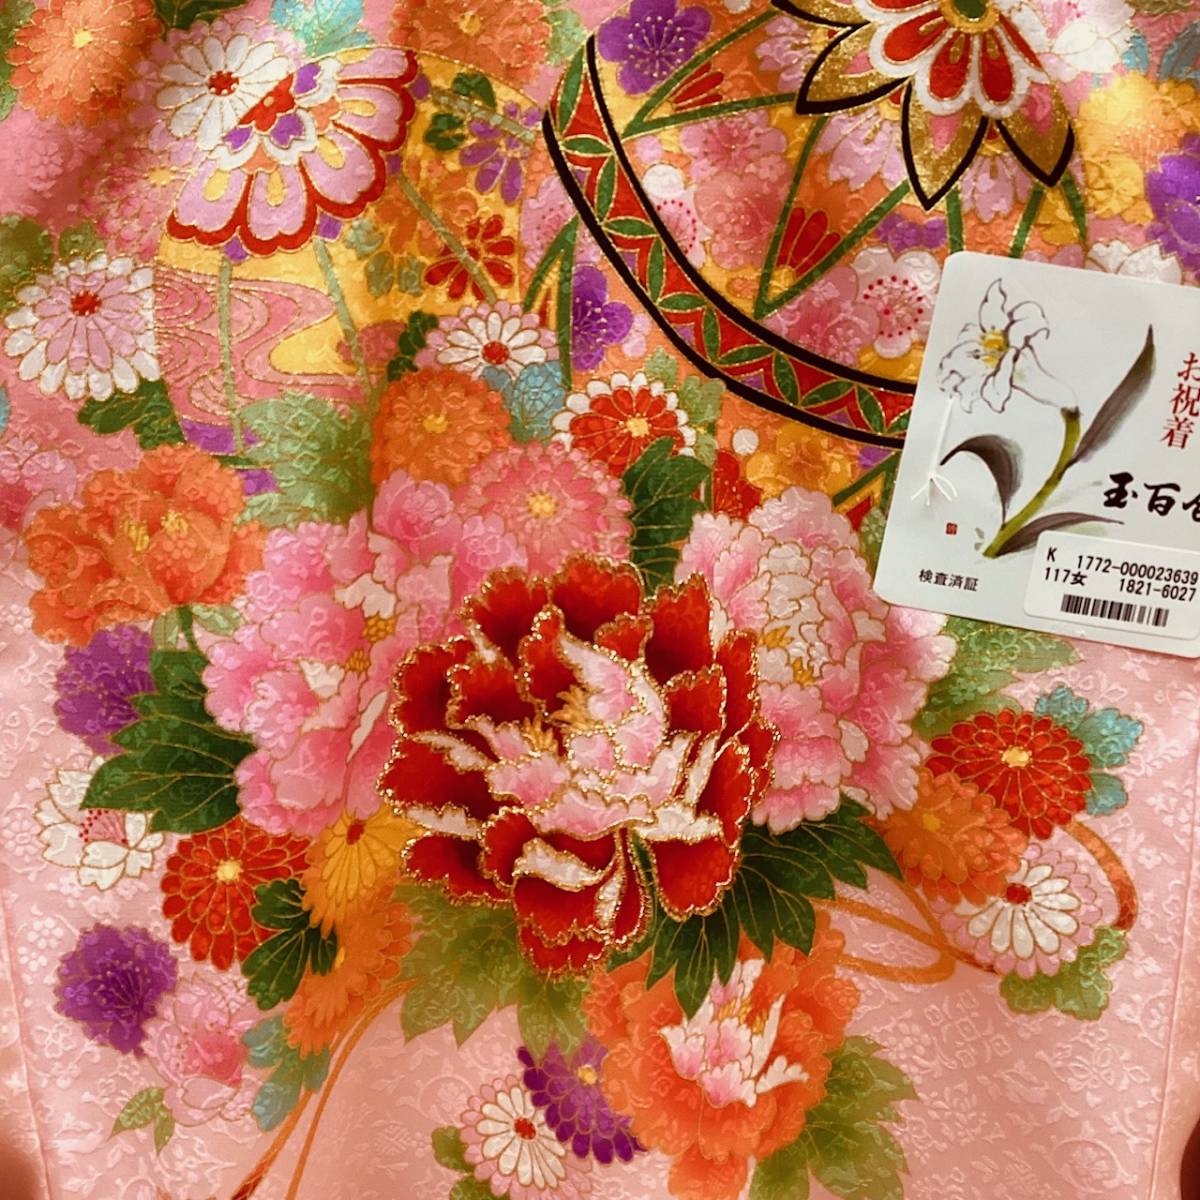 o. три . девочка кимоно ug303 производство надеты первый надеты праздник надеты розовый земля рука . цветок документ sama новый товар включая доставку 